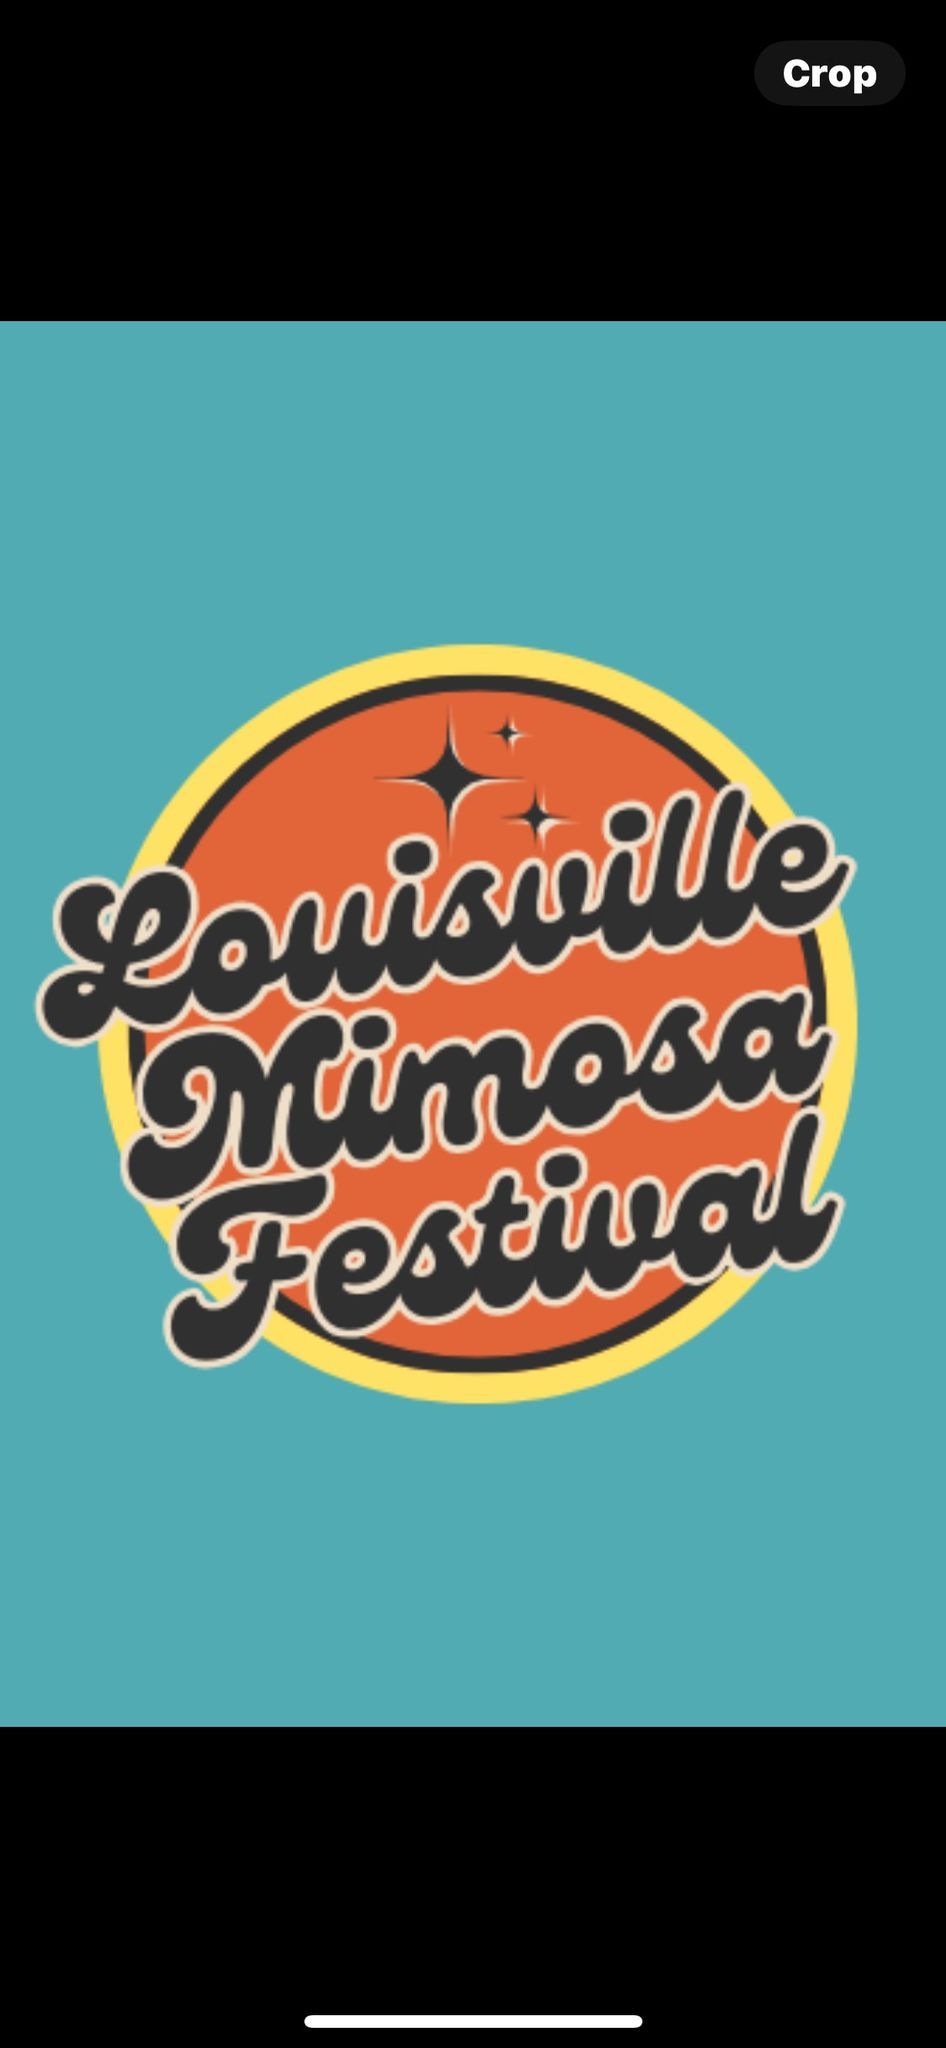 Louisville Mimosa Festival